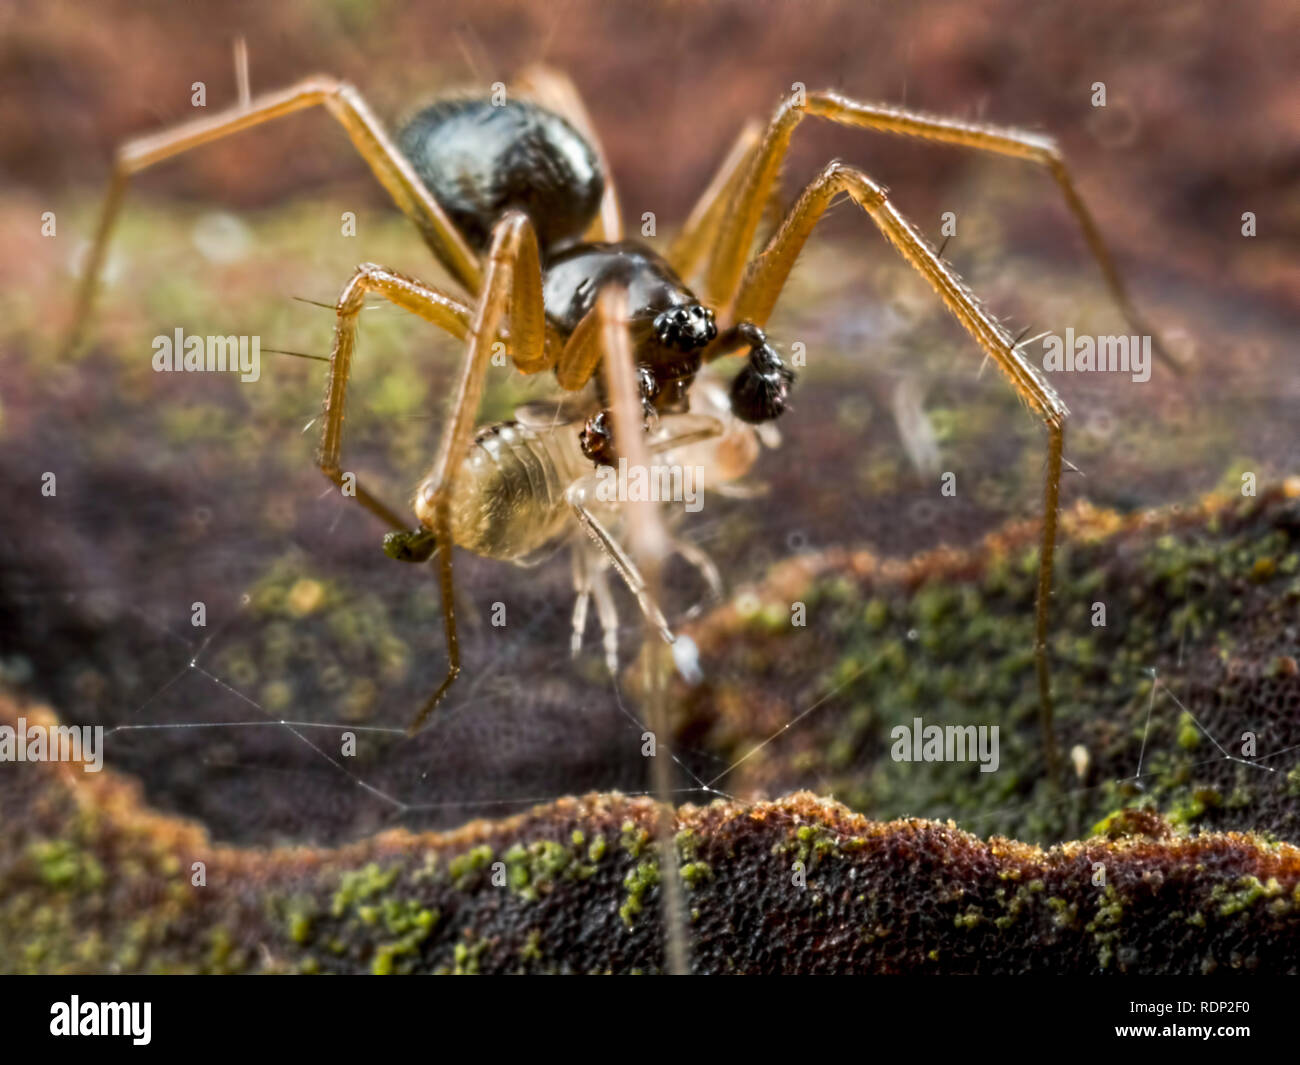 Une petite araignée (env. 3-5mm) snacking sur l'écorce d'une minute à l'Ramsdown nymphe de mouche près de Hurn dans le Dorset. Mag 3.5x avec flash diffus Banque D'Images